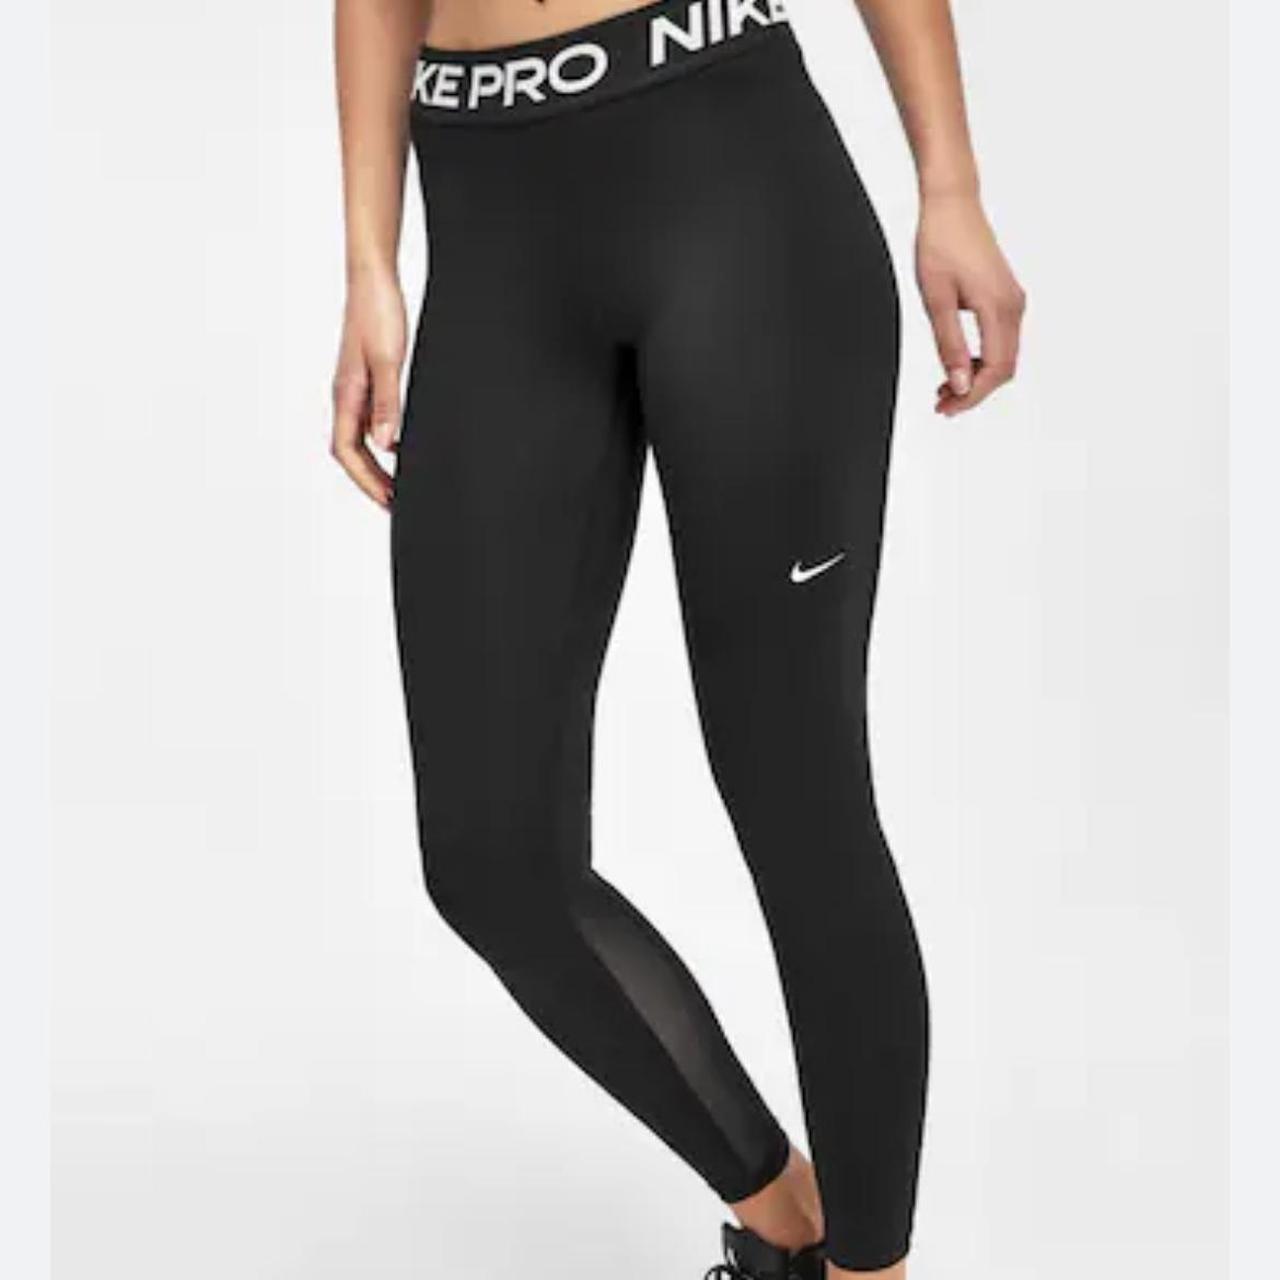 Nike Women's Black and White Leggings | Depop